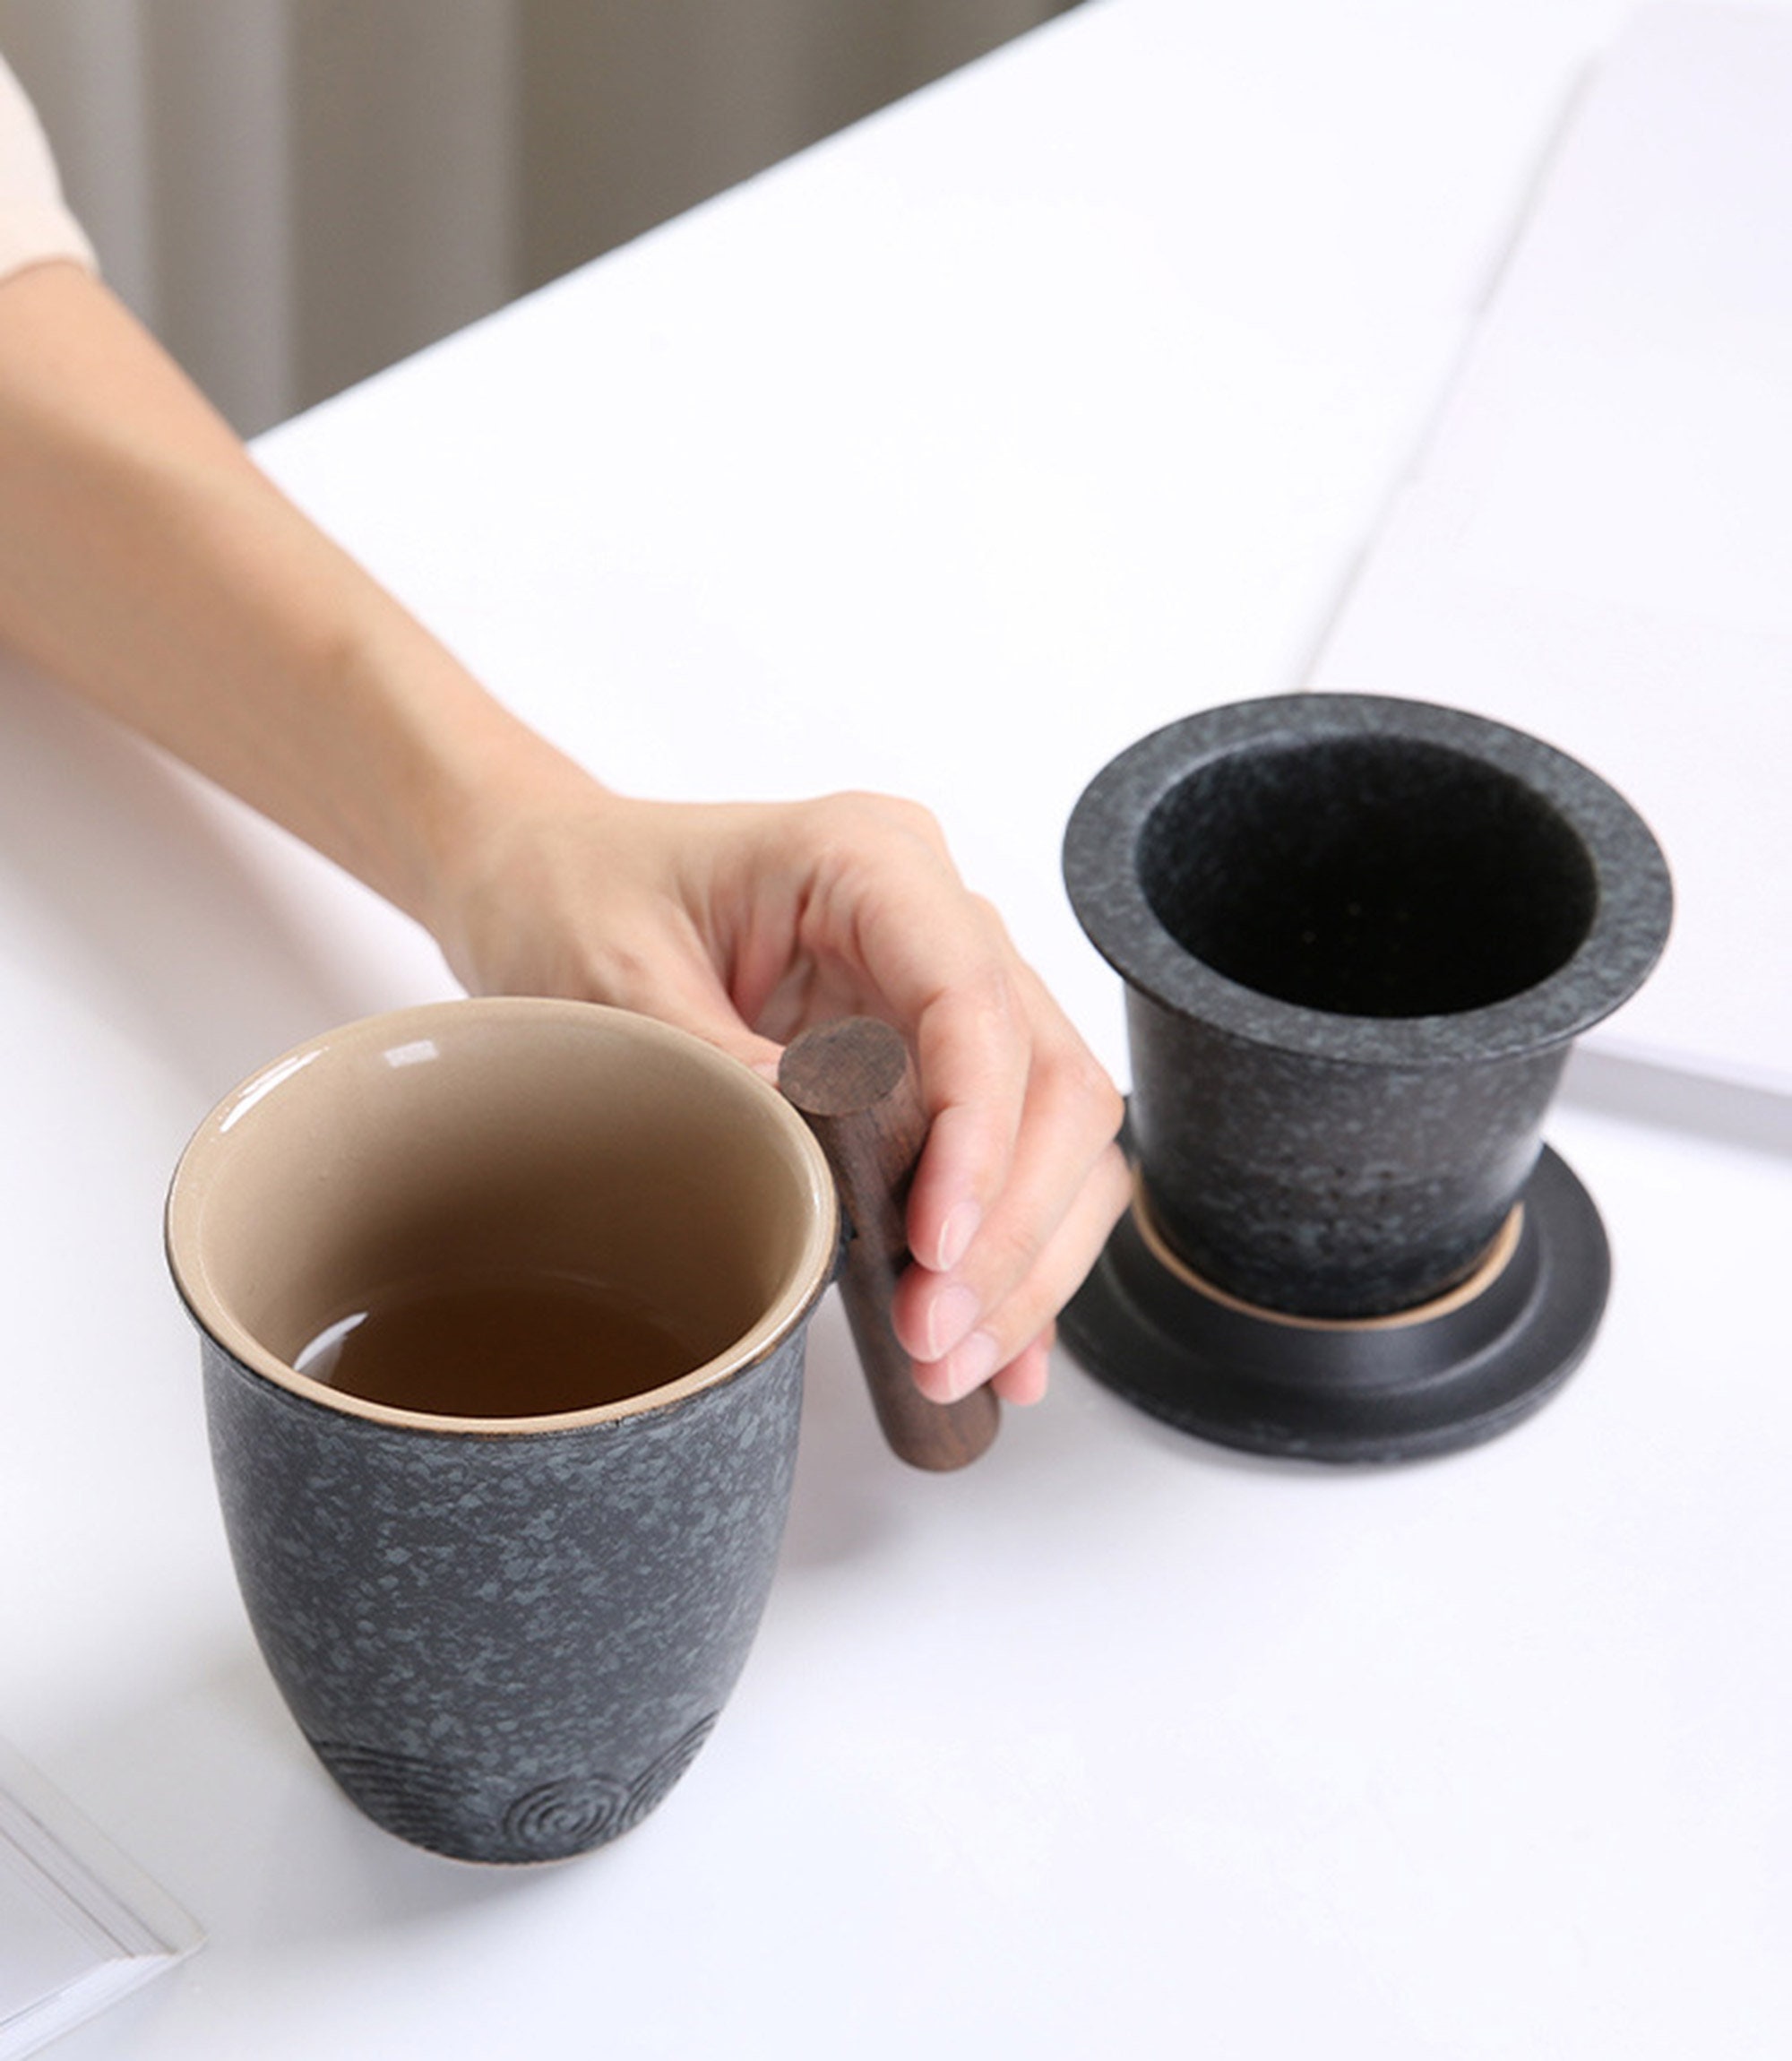 Tasse à thé en porcelaine avec couvercle et infuseur